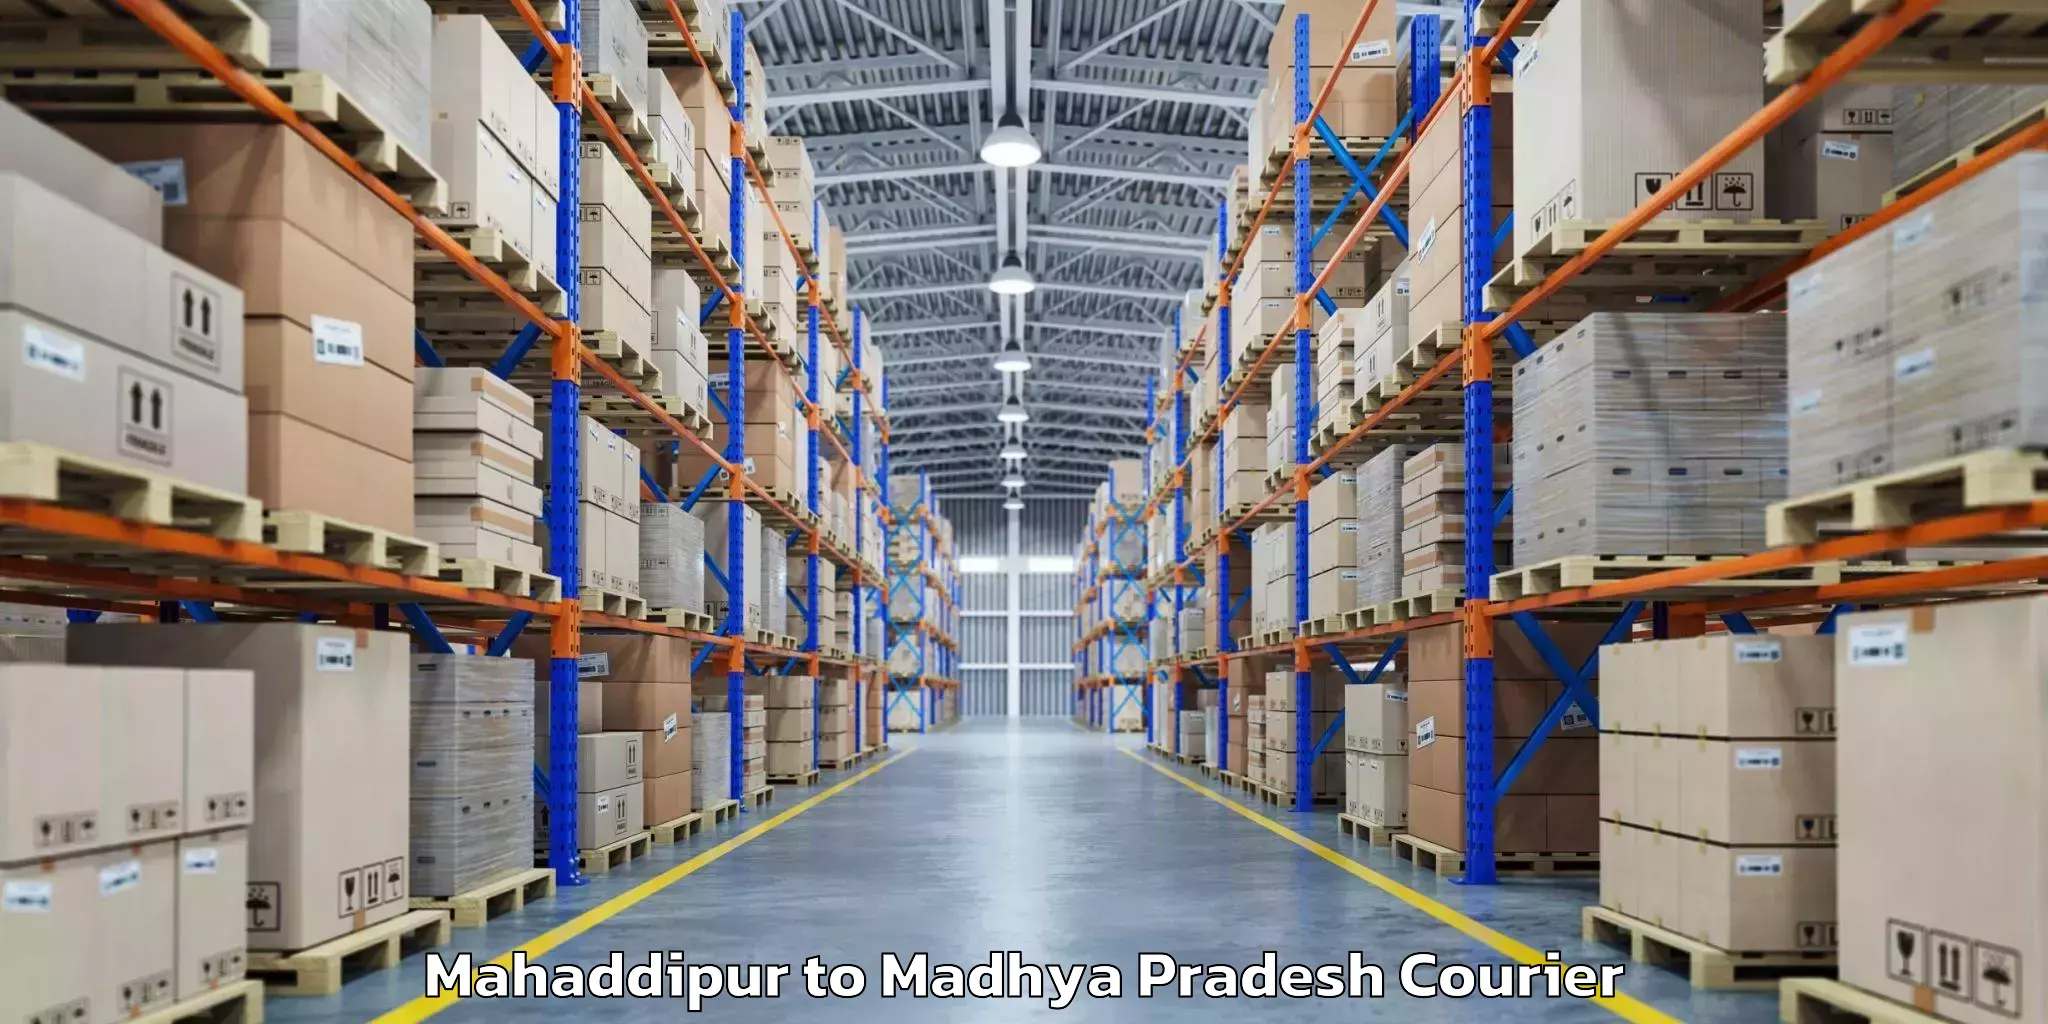 Baggage shipping advice Mahaddipur to Sihora